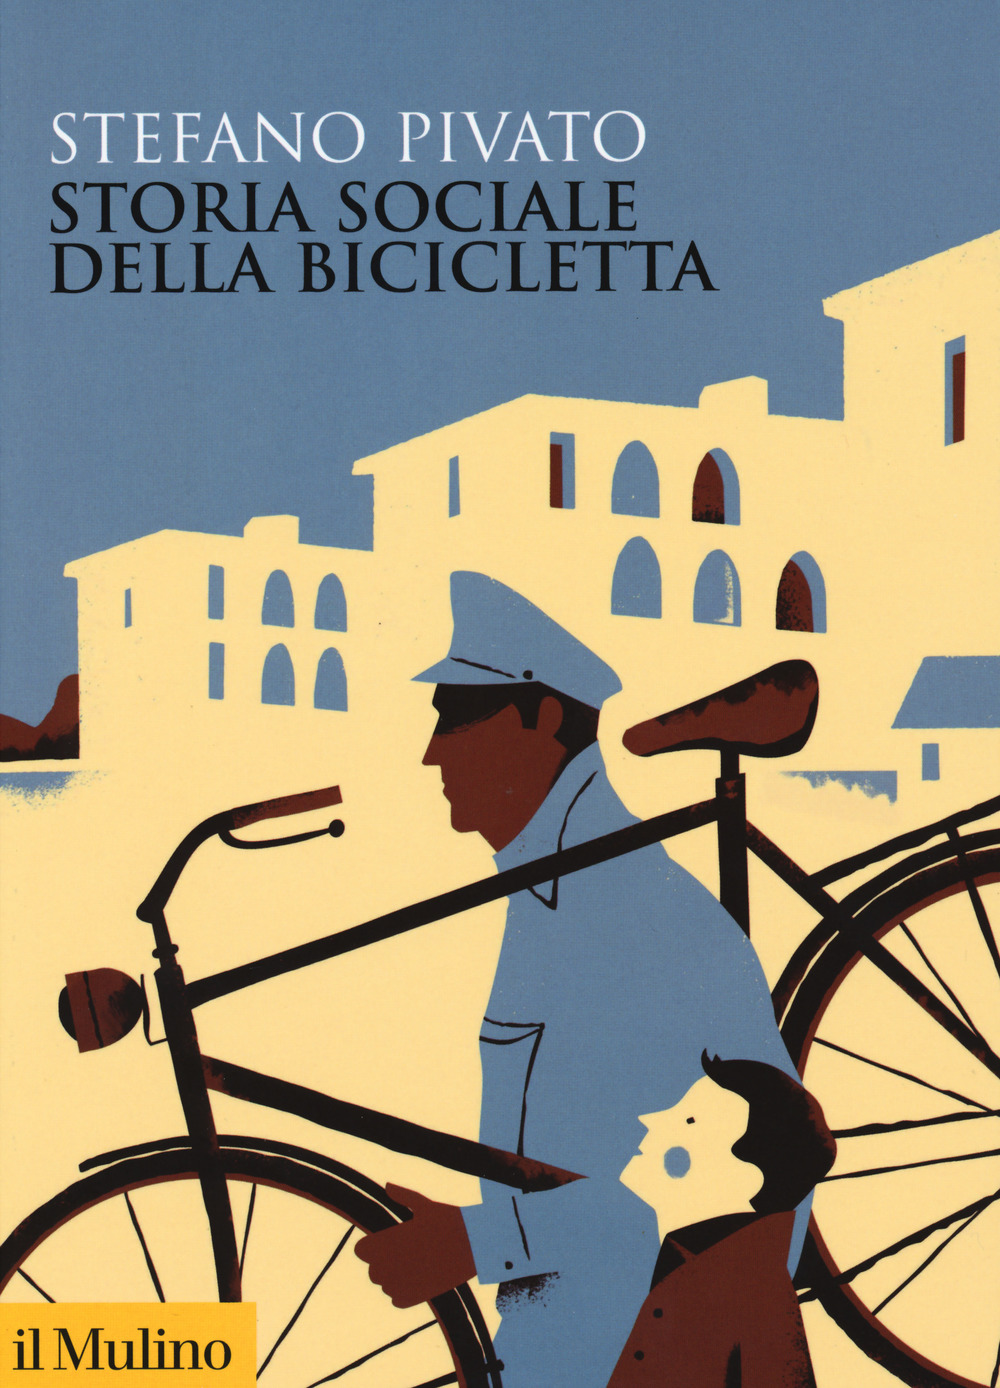 Libri Stefano Pivato - Storia Sociale Della Bicicletta NUOVO SIGILLATO, EDIZIONE DEL 24/10/2019 SUBITO DISPONIBILE